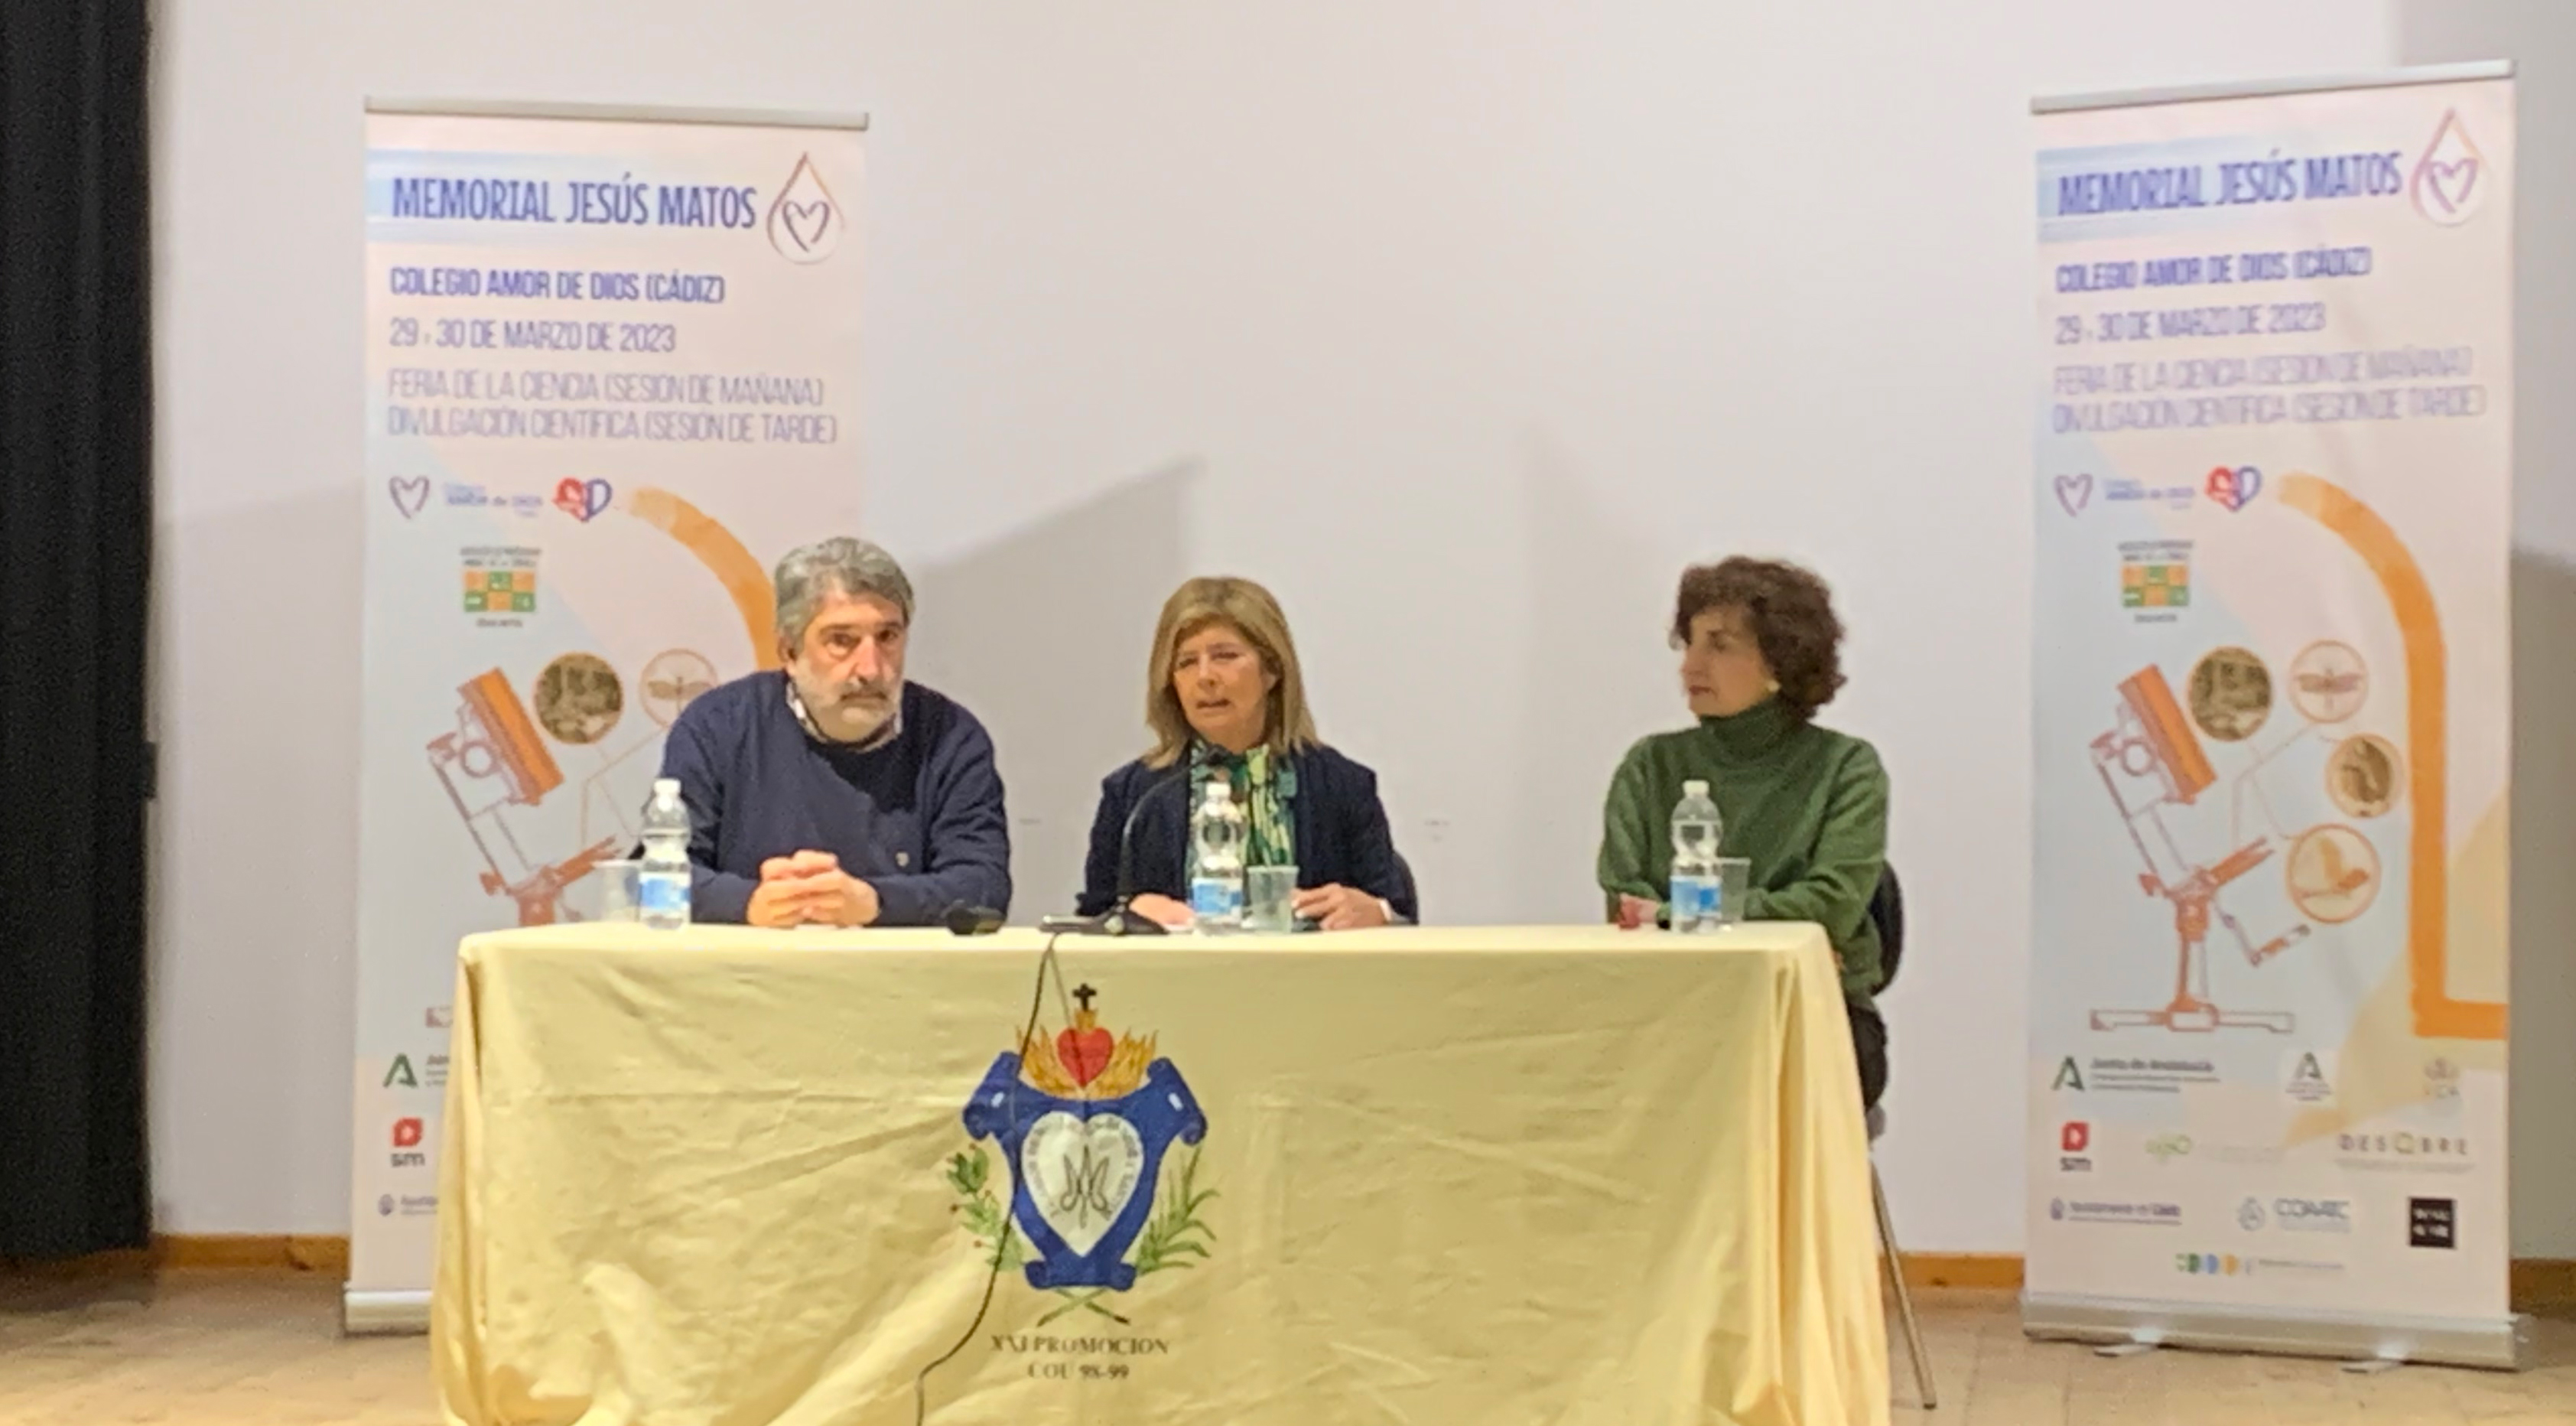 El colegio Amor de Dios acoge los días 29 y 30 de marzo la celebración del II Memorial Jesús Matos, Feria de la Ciencia en la que participan 35 colegios de Cádiz y otras provincias